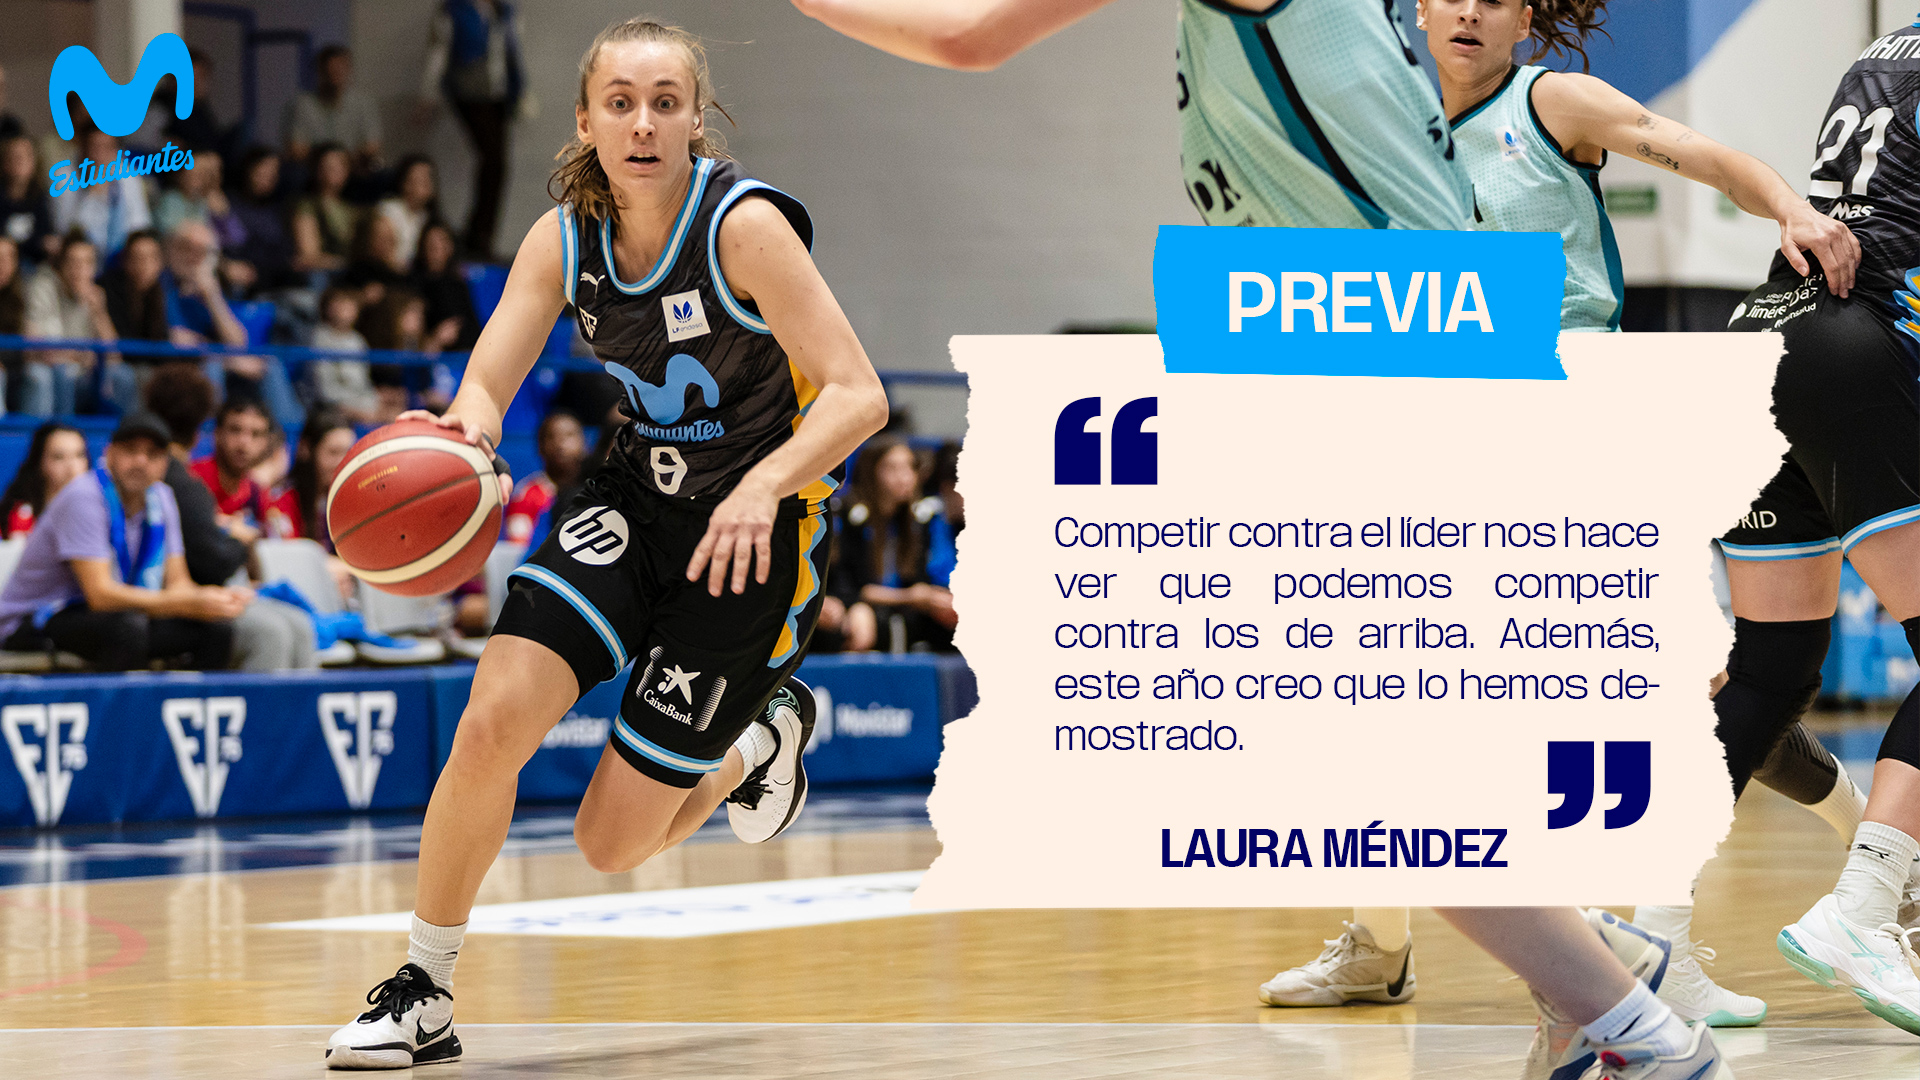 Laura Méndez: «Competir contra el líder nos hace ver que podemos competir contra los de arriba.»